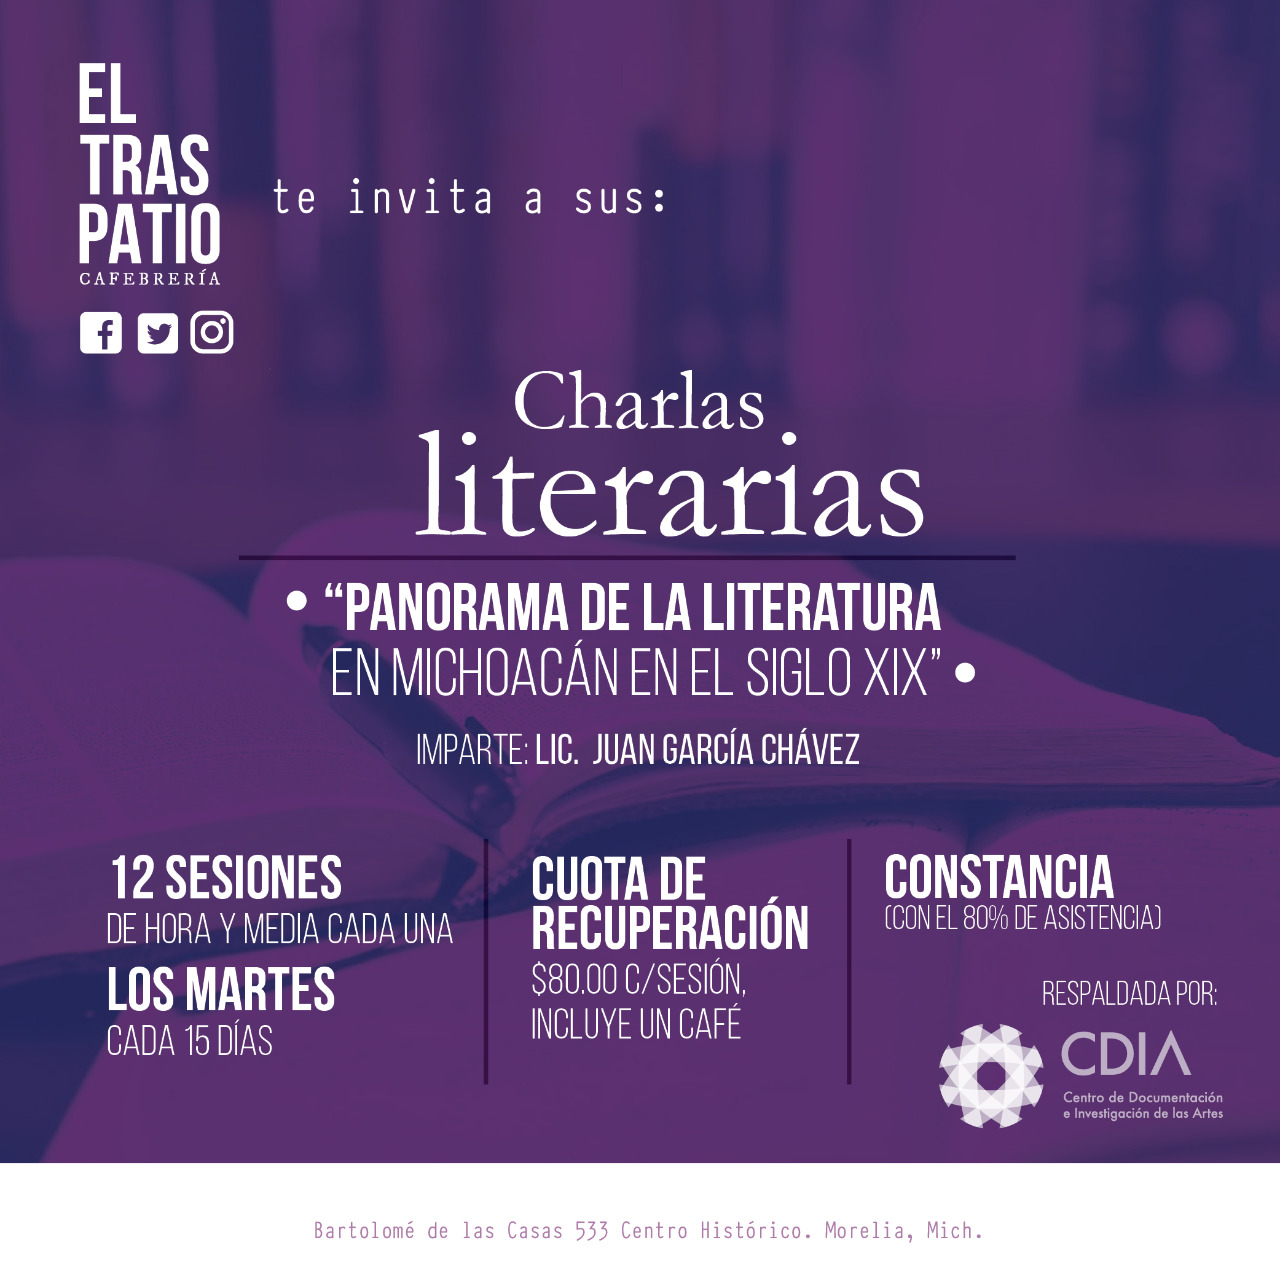 Charlas literarias. “Panorama de la literatura en Michoacán en el siglo XIX”